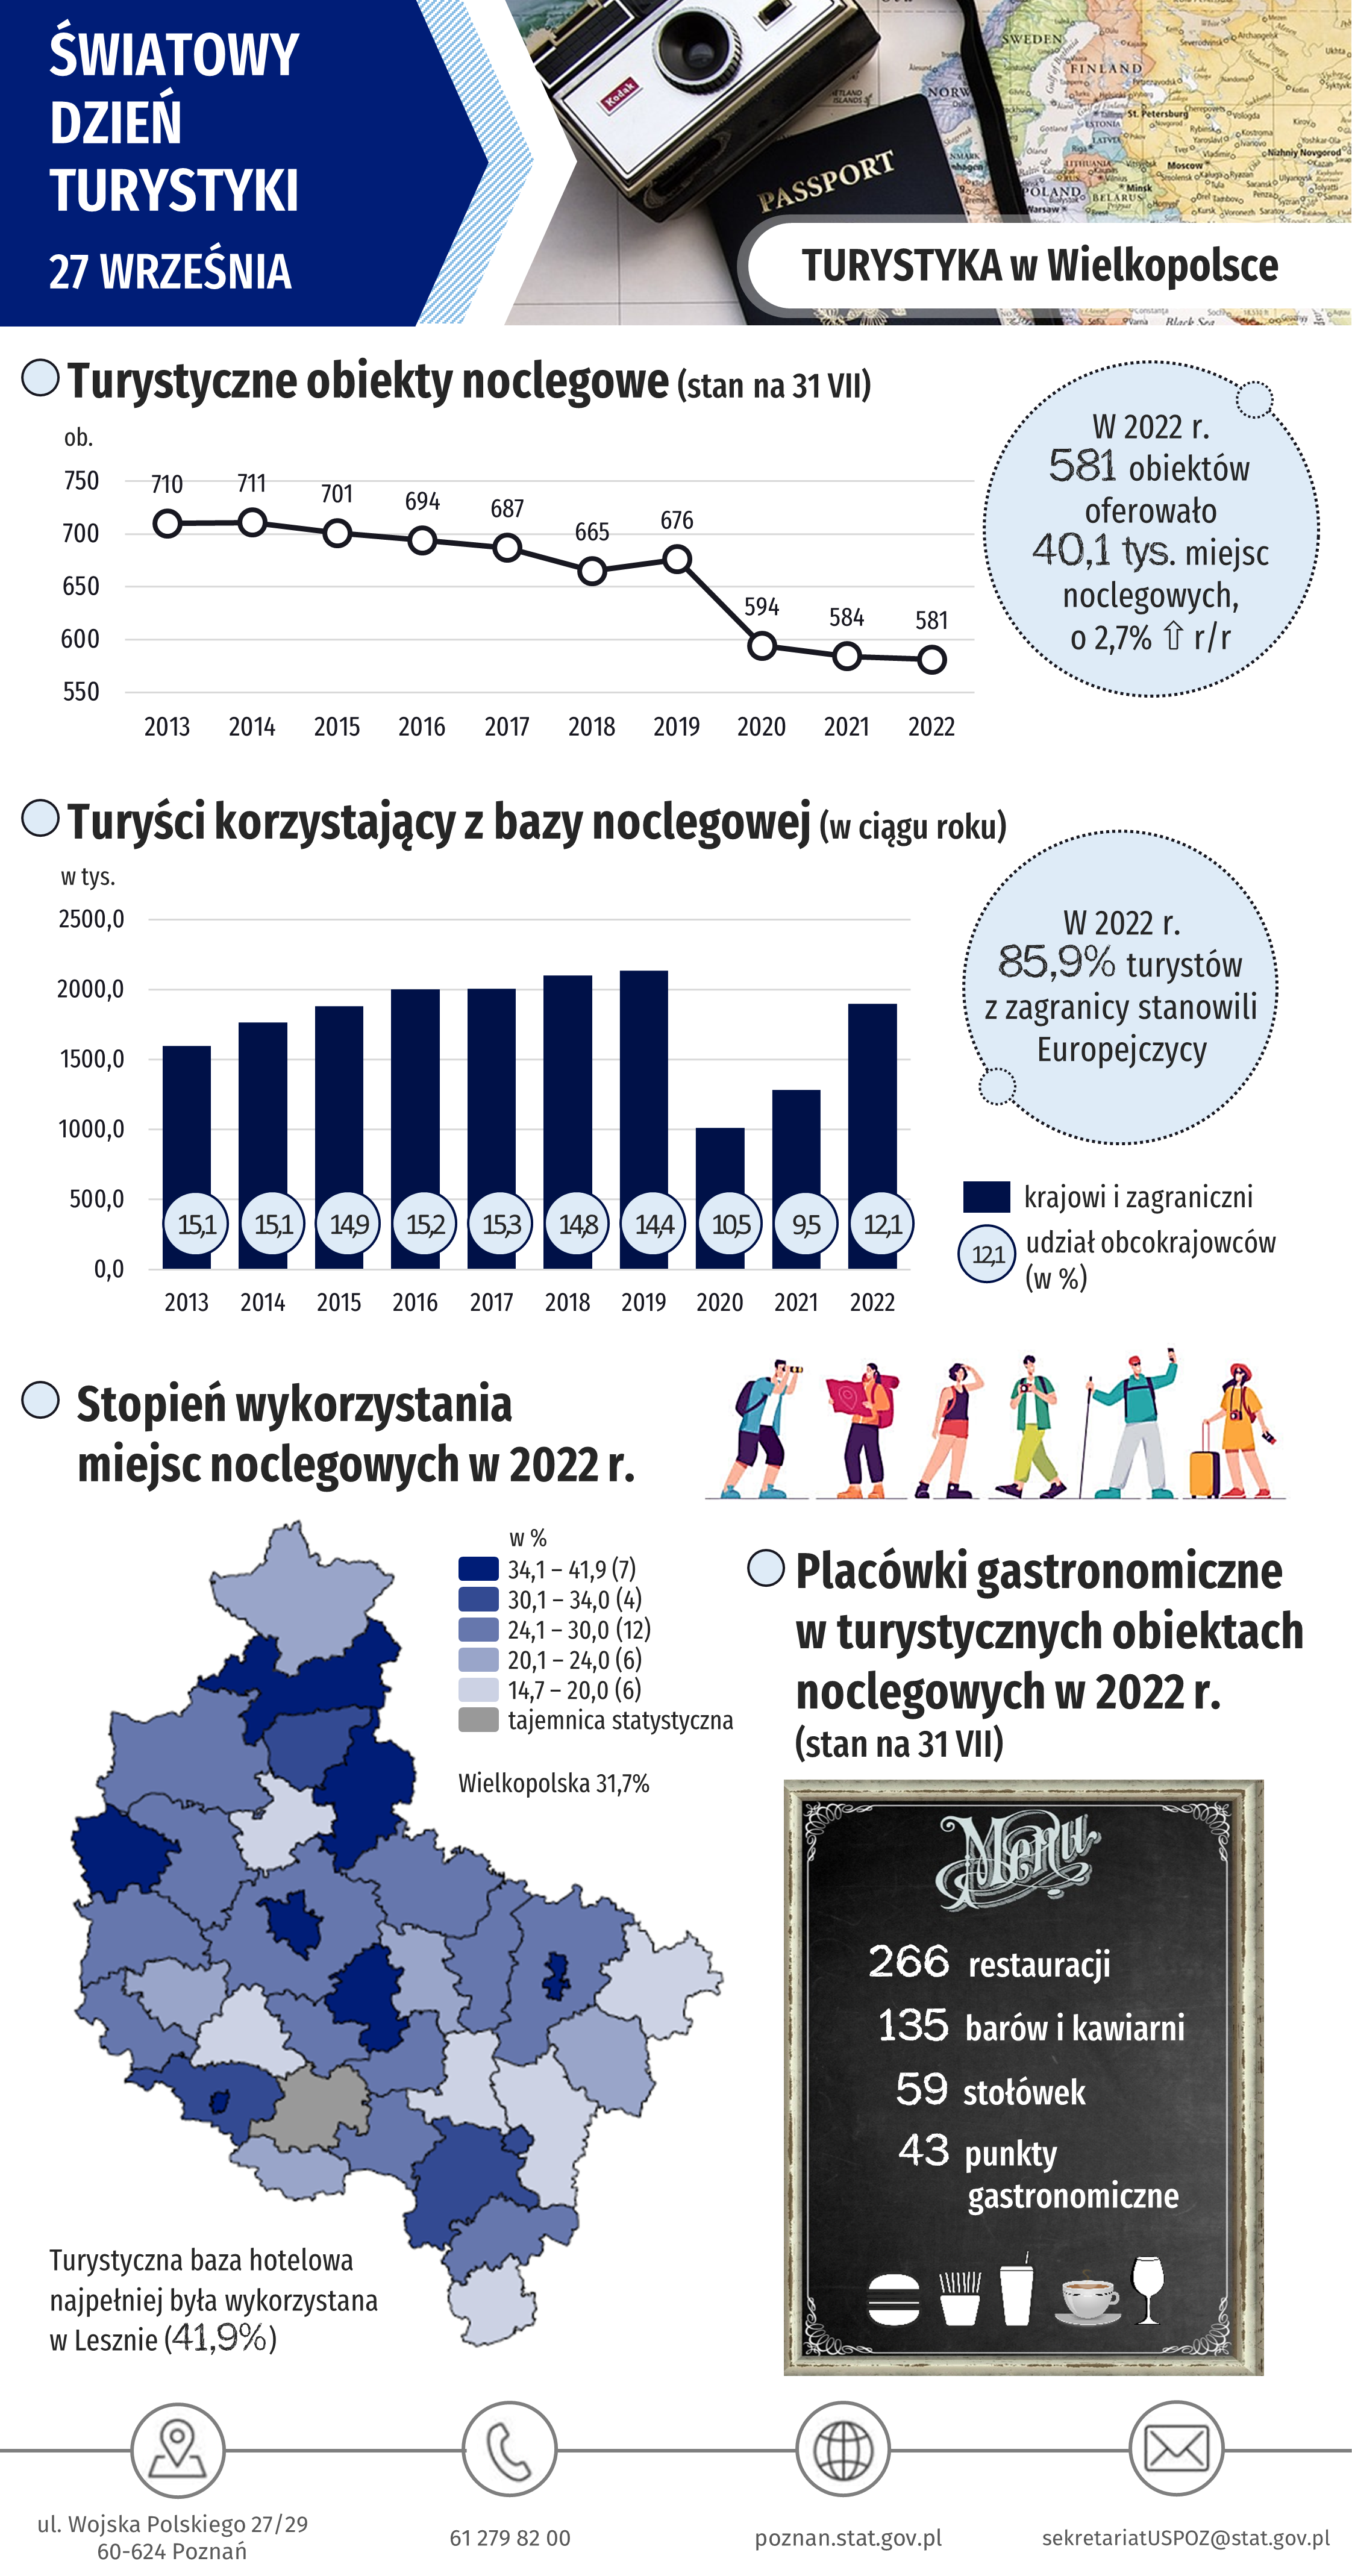 Infografika Światowy Dzień Turystyki - Turystyka w Wielkopolsce w 2022 r.